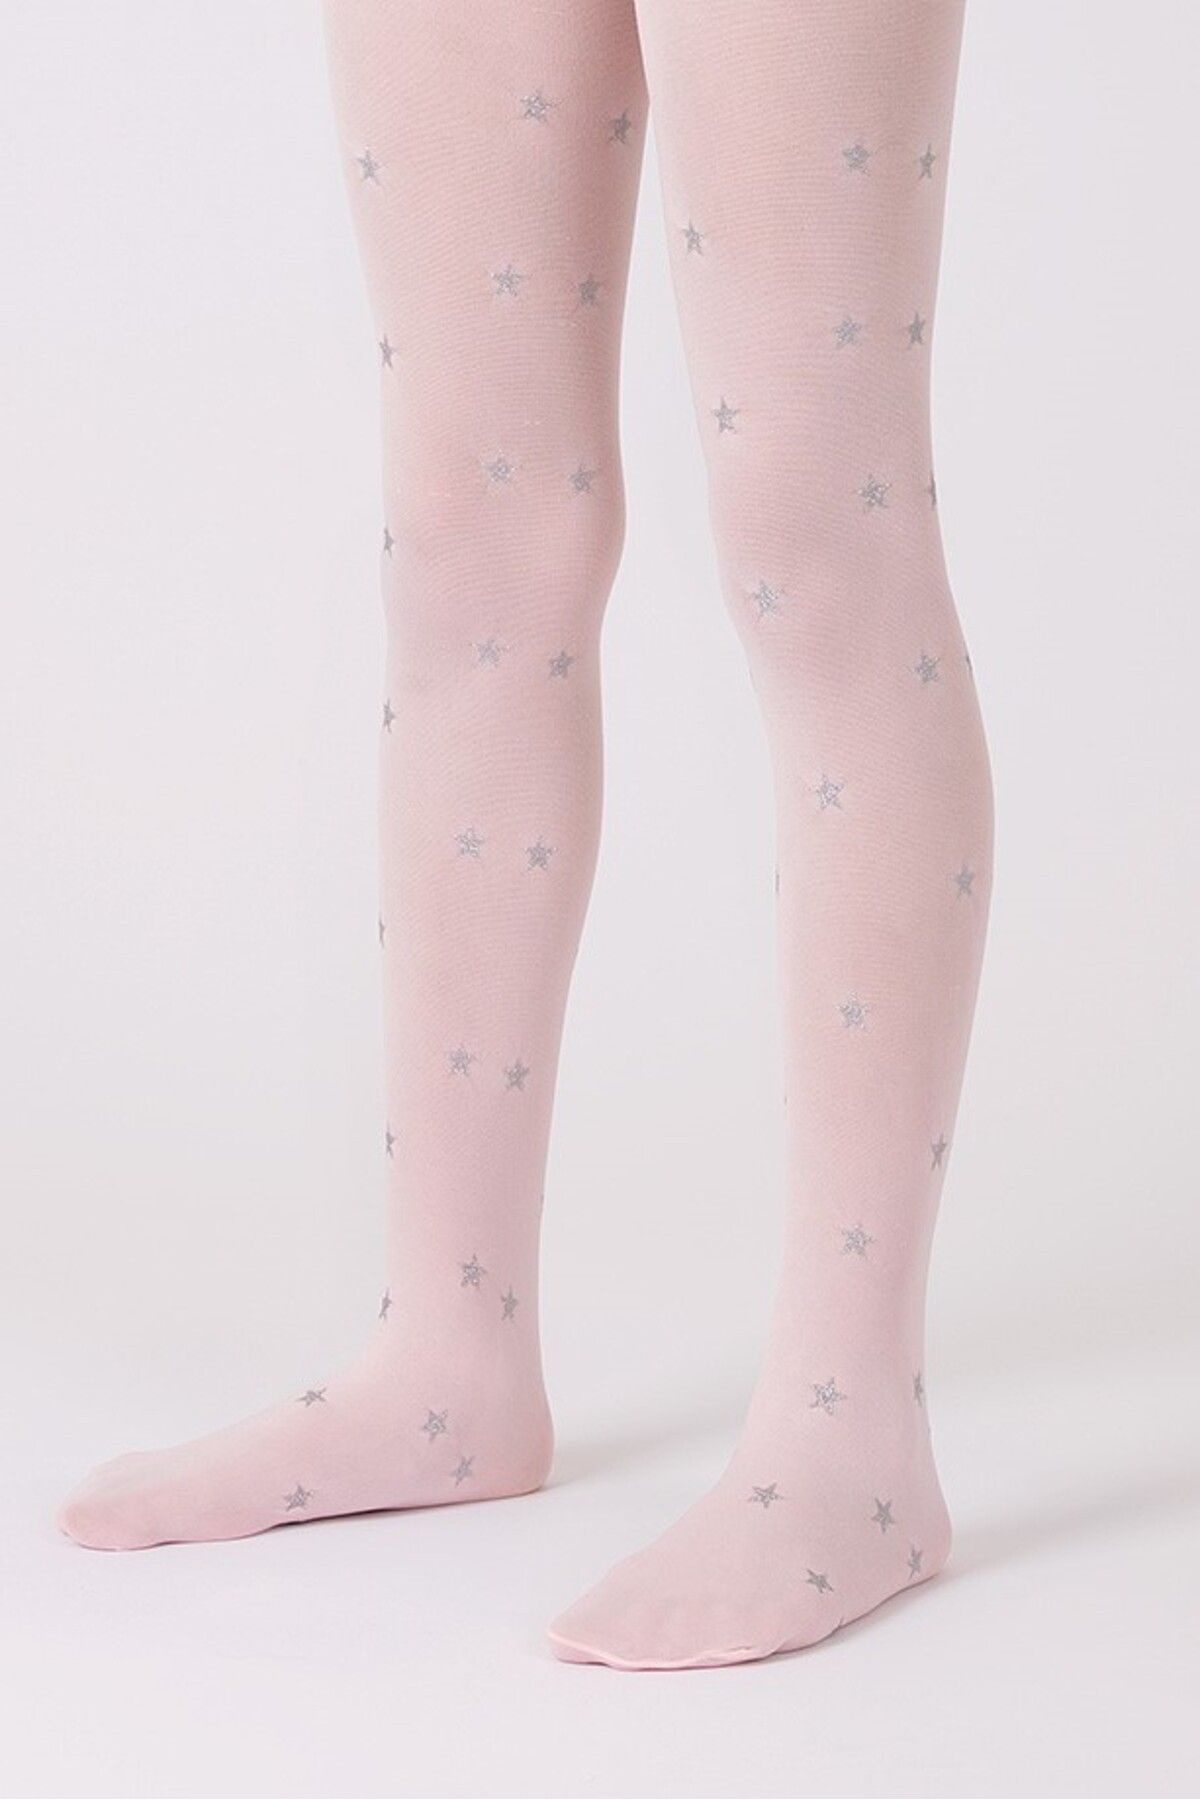 Goose Gümüş Yıldız Desenli Pembe Kız Çocuk Külotlu Çorap